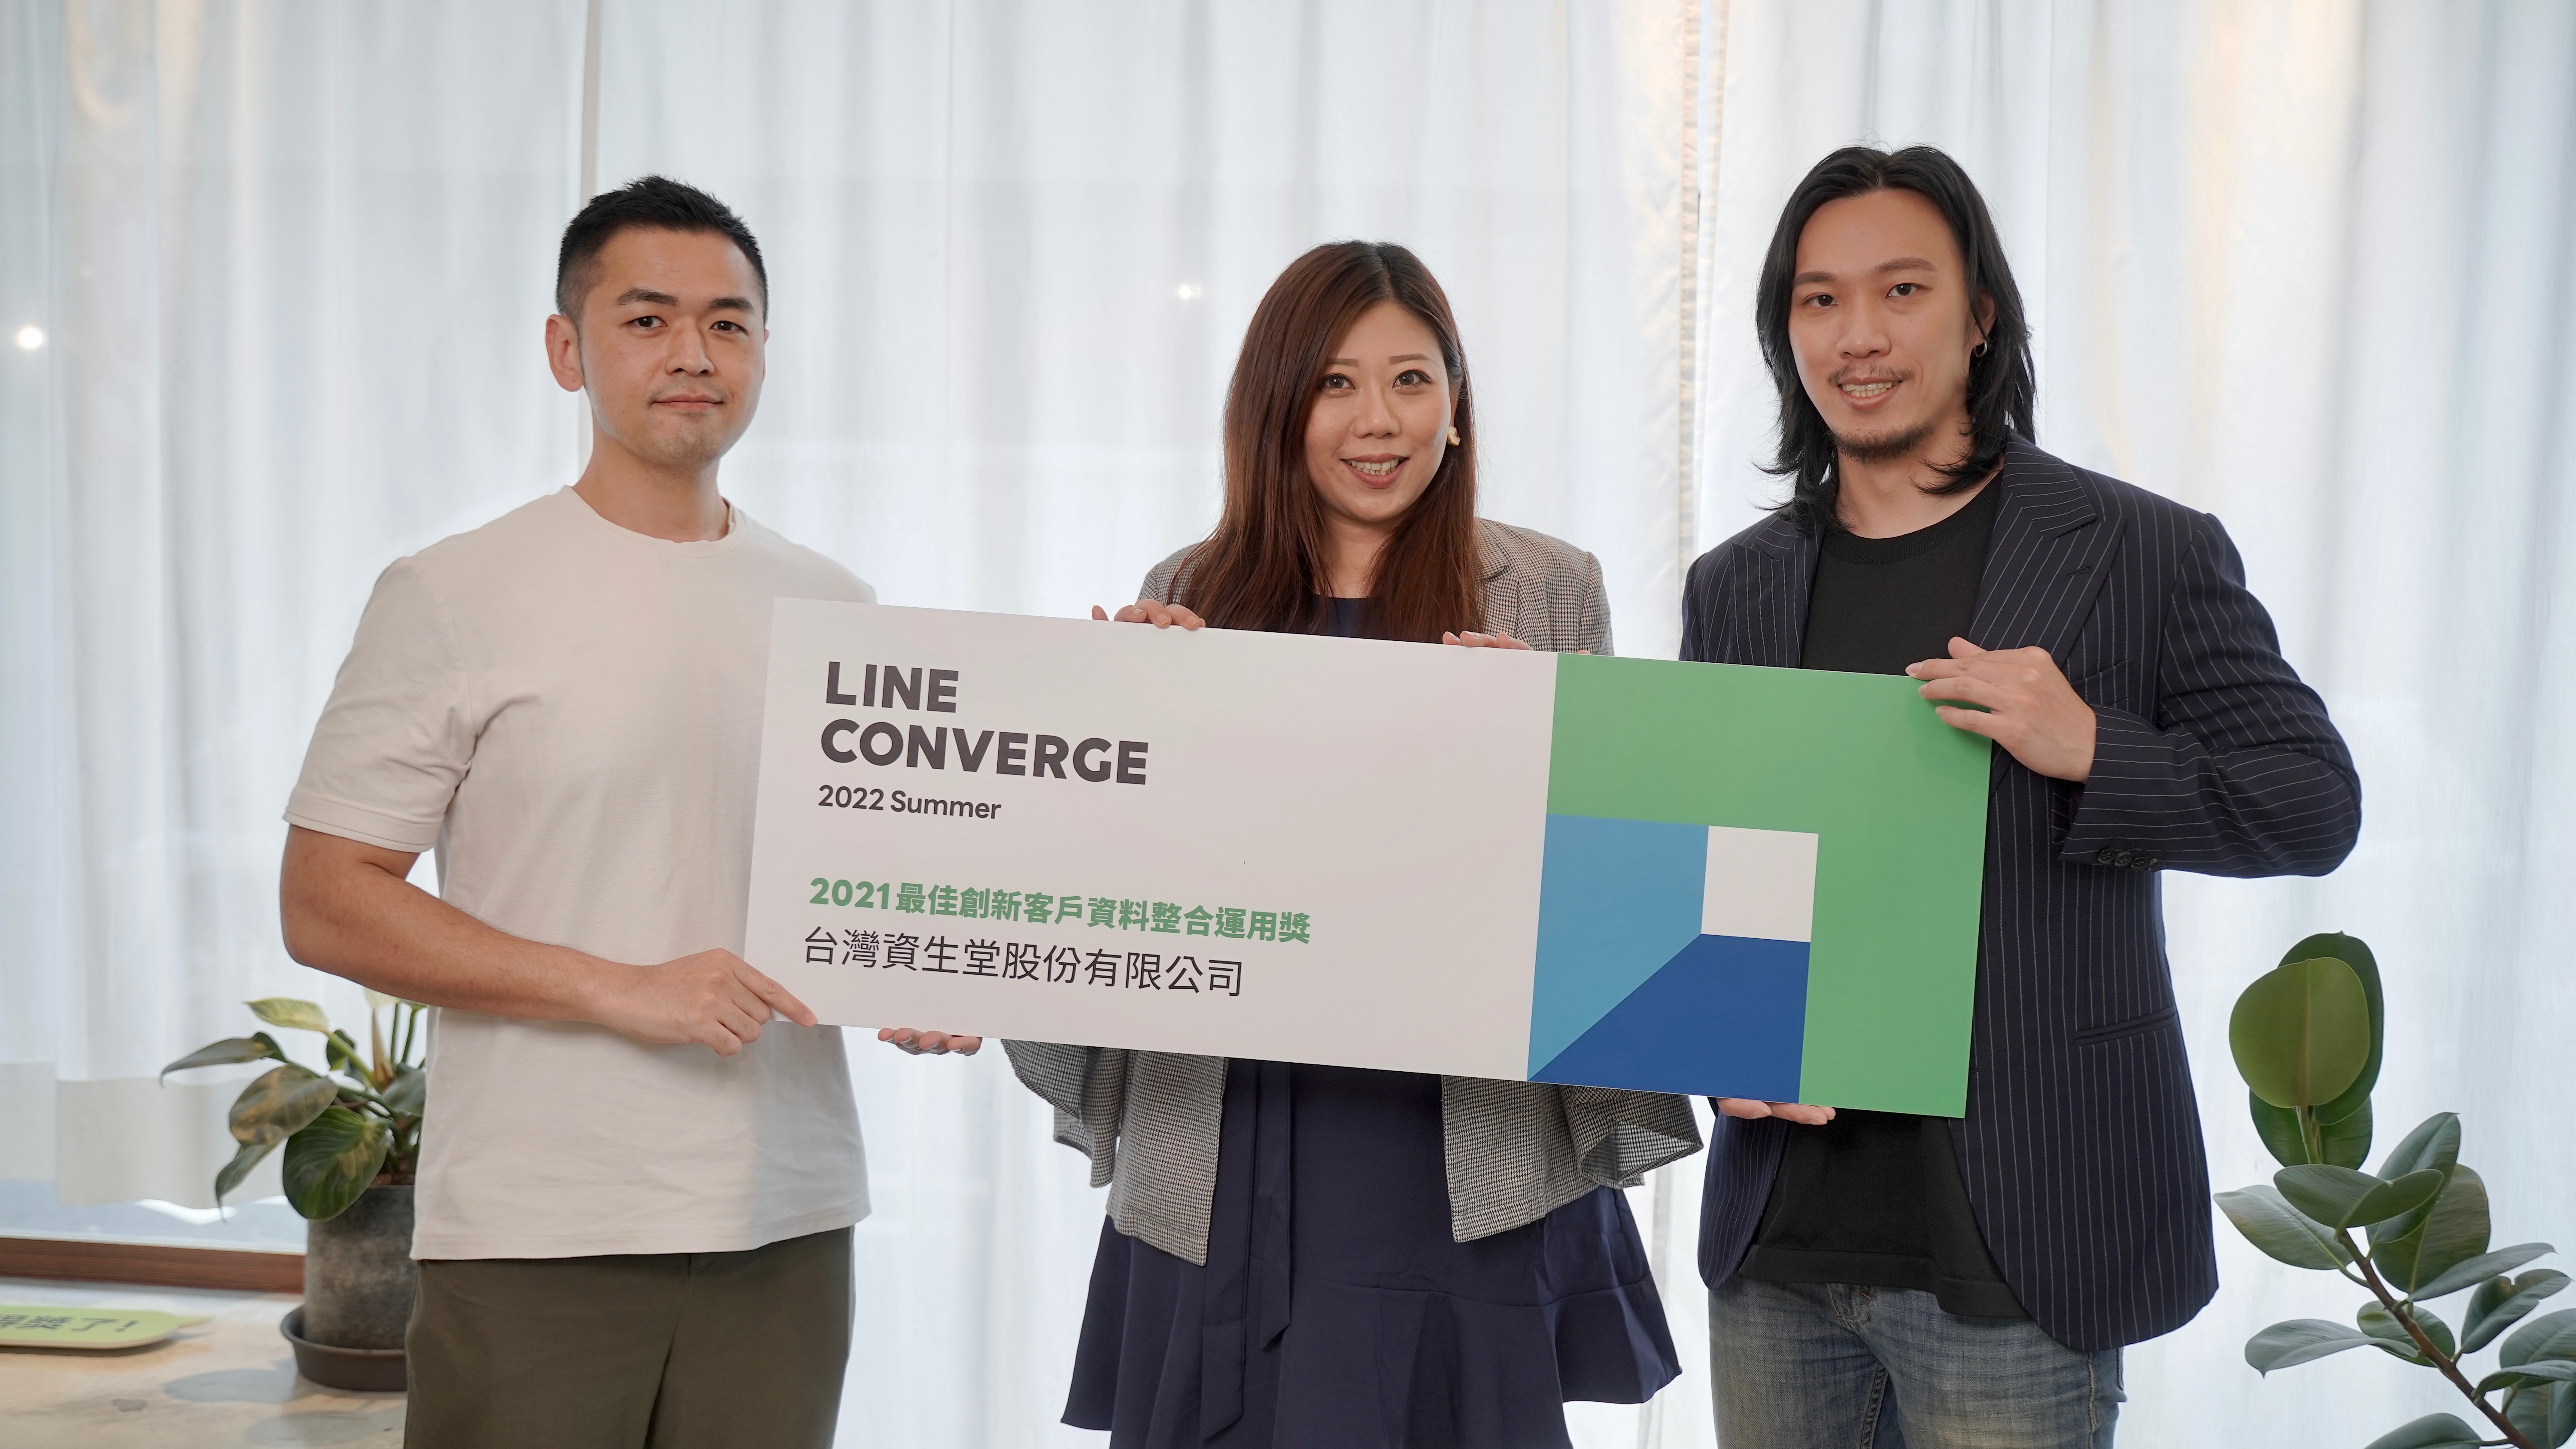 台灣資生堂行銷統括部部長陳思伃 Rita 與 LINE Biz-Solutions 團隊 合影